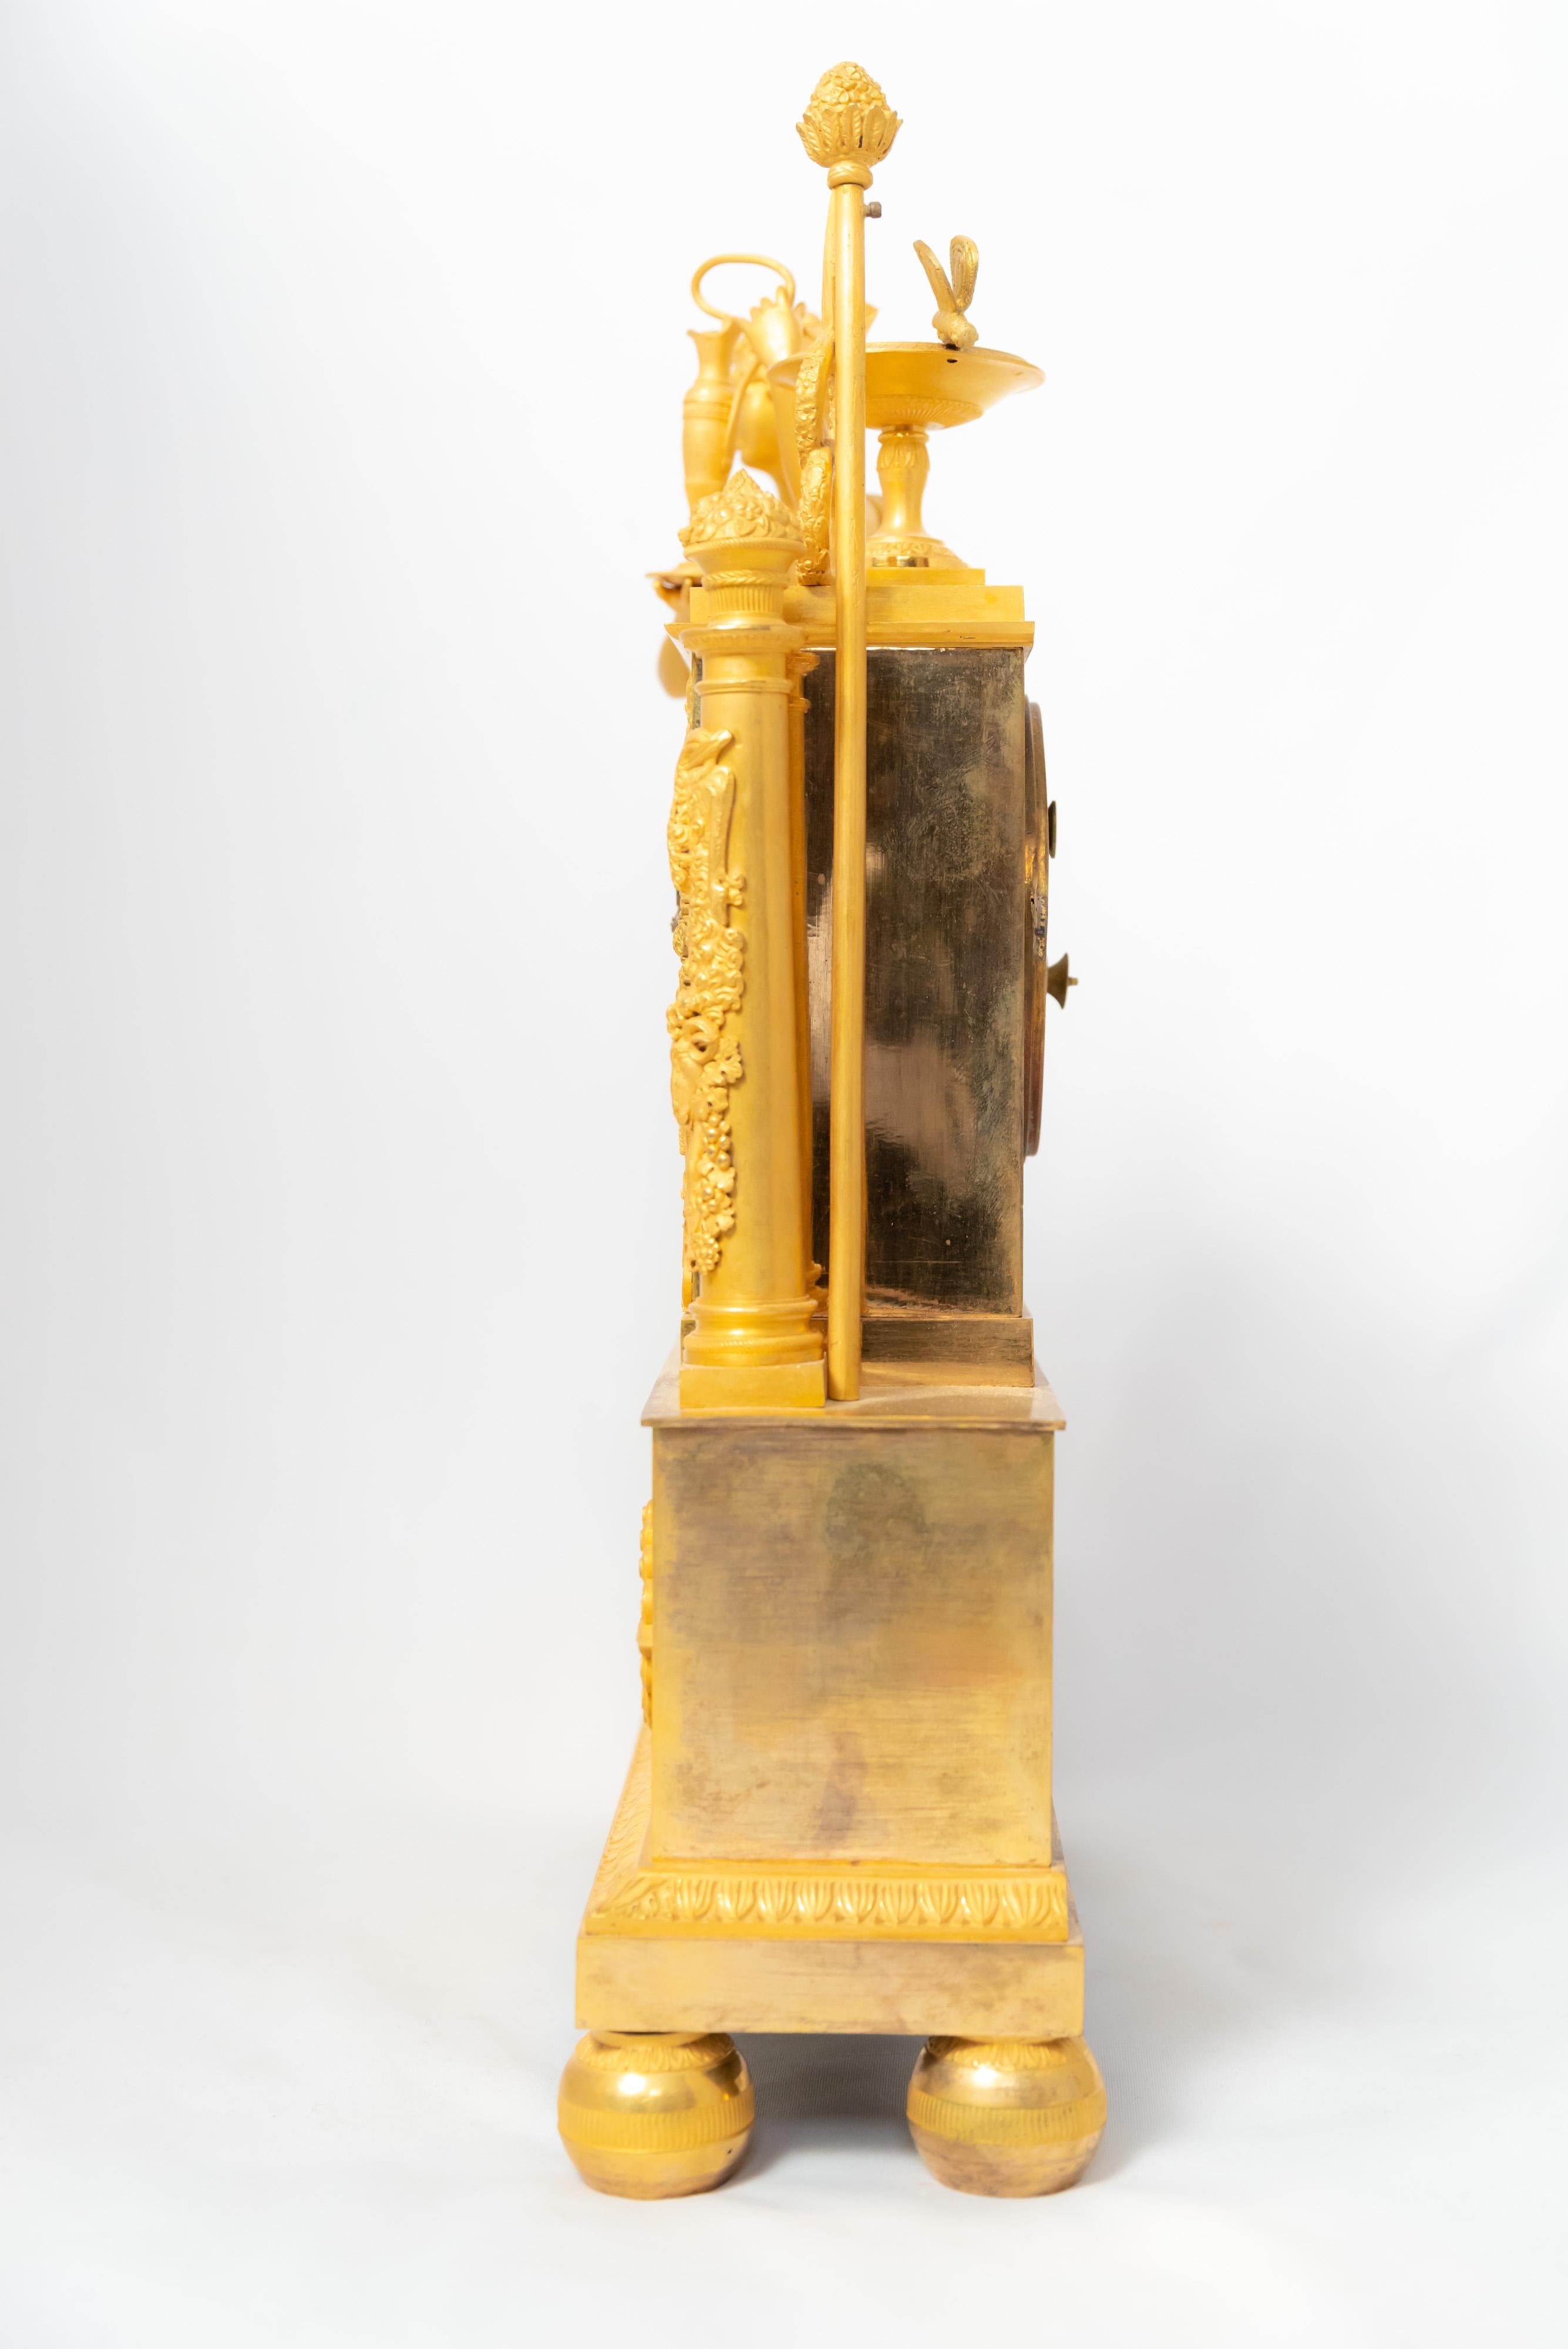 Eine Kaminsimsuhr aus der französischen Restaurationszeit von 1815-1830 aus feuervergoldeter Bronze. Das Zifferblatt ist weiß emailliert und die Stunden sind mit römischen Ziffern dargestellt. Die Figur stellt die Göttin Hera, die Frau des Zeus,